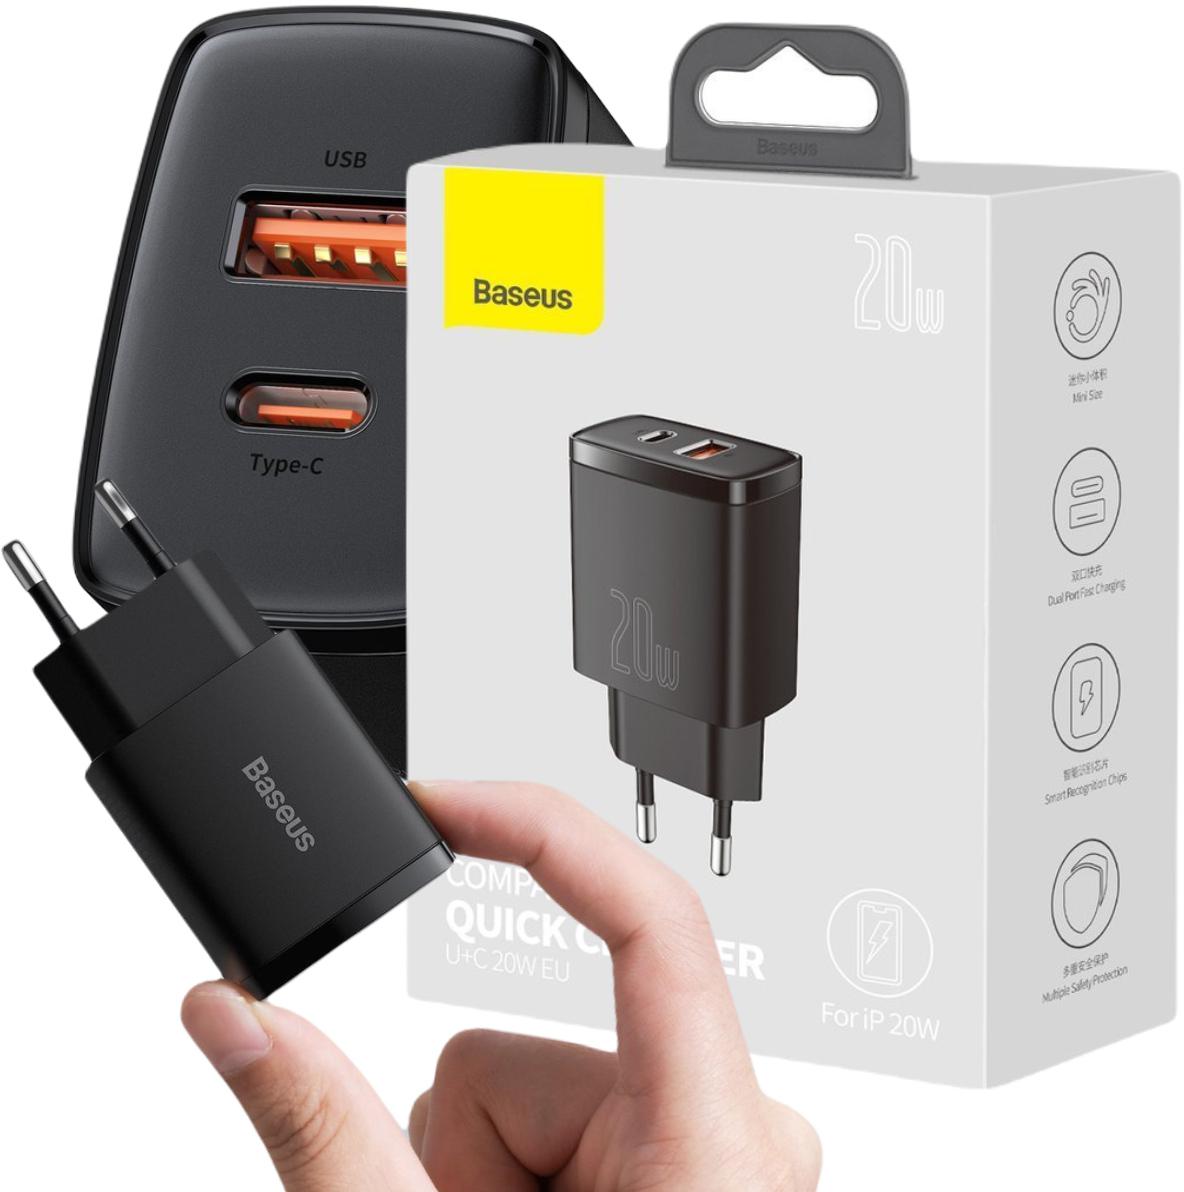 Szybka ładowarka sieciowa Baseus Compact USB / USB Typ C 20W 3A Power Delivery Quick Charge 3.0 czarna (CCXJ-B01) - najważniejsze cechy: